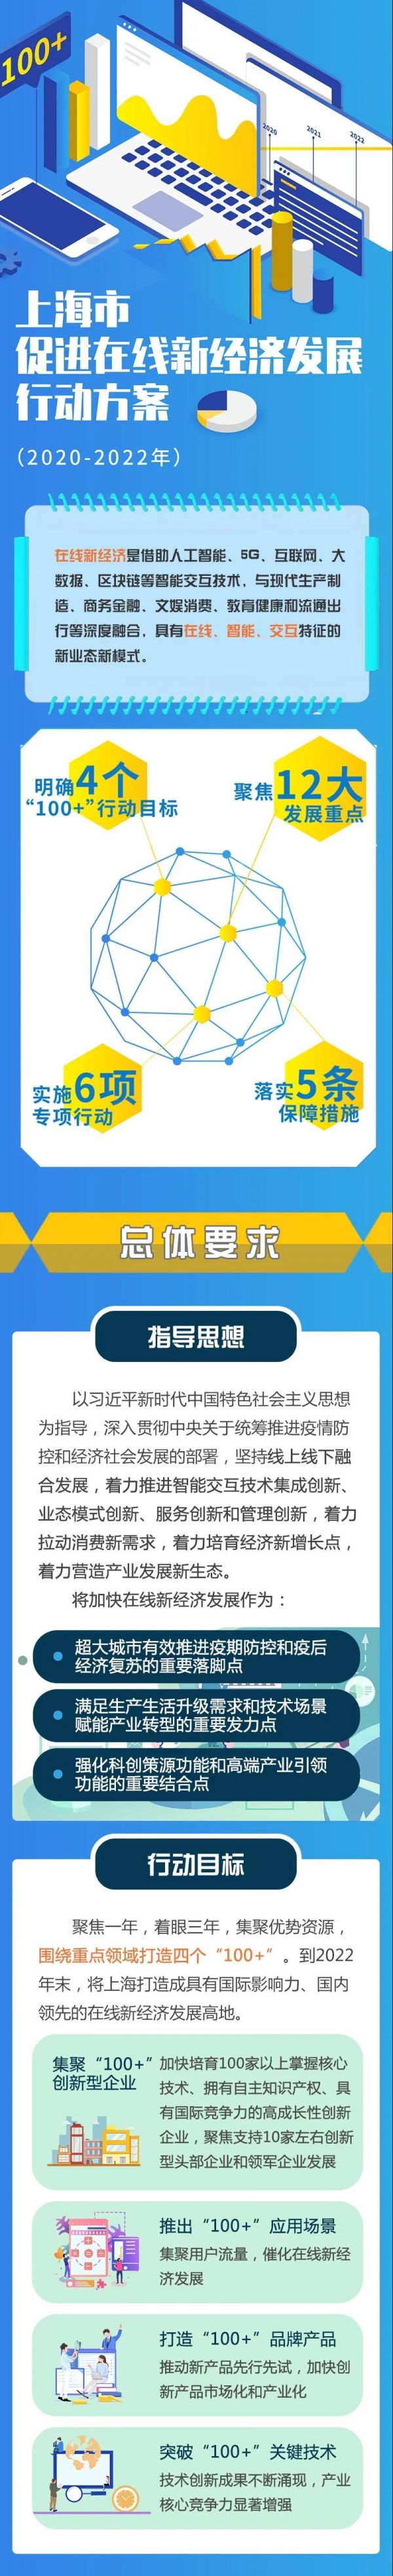 上海市促进在线新经济发展行动方案发布-中国网地产